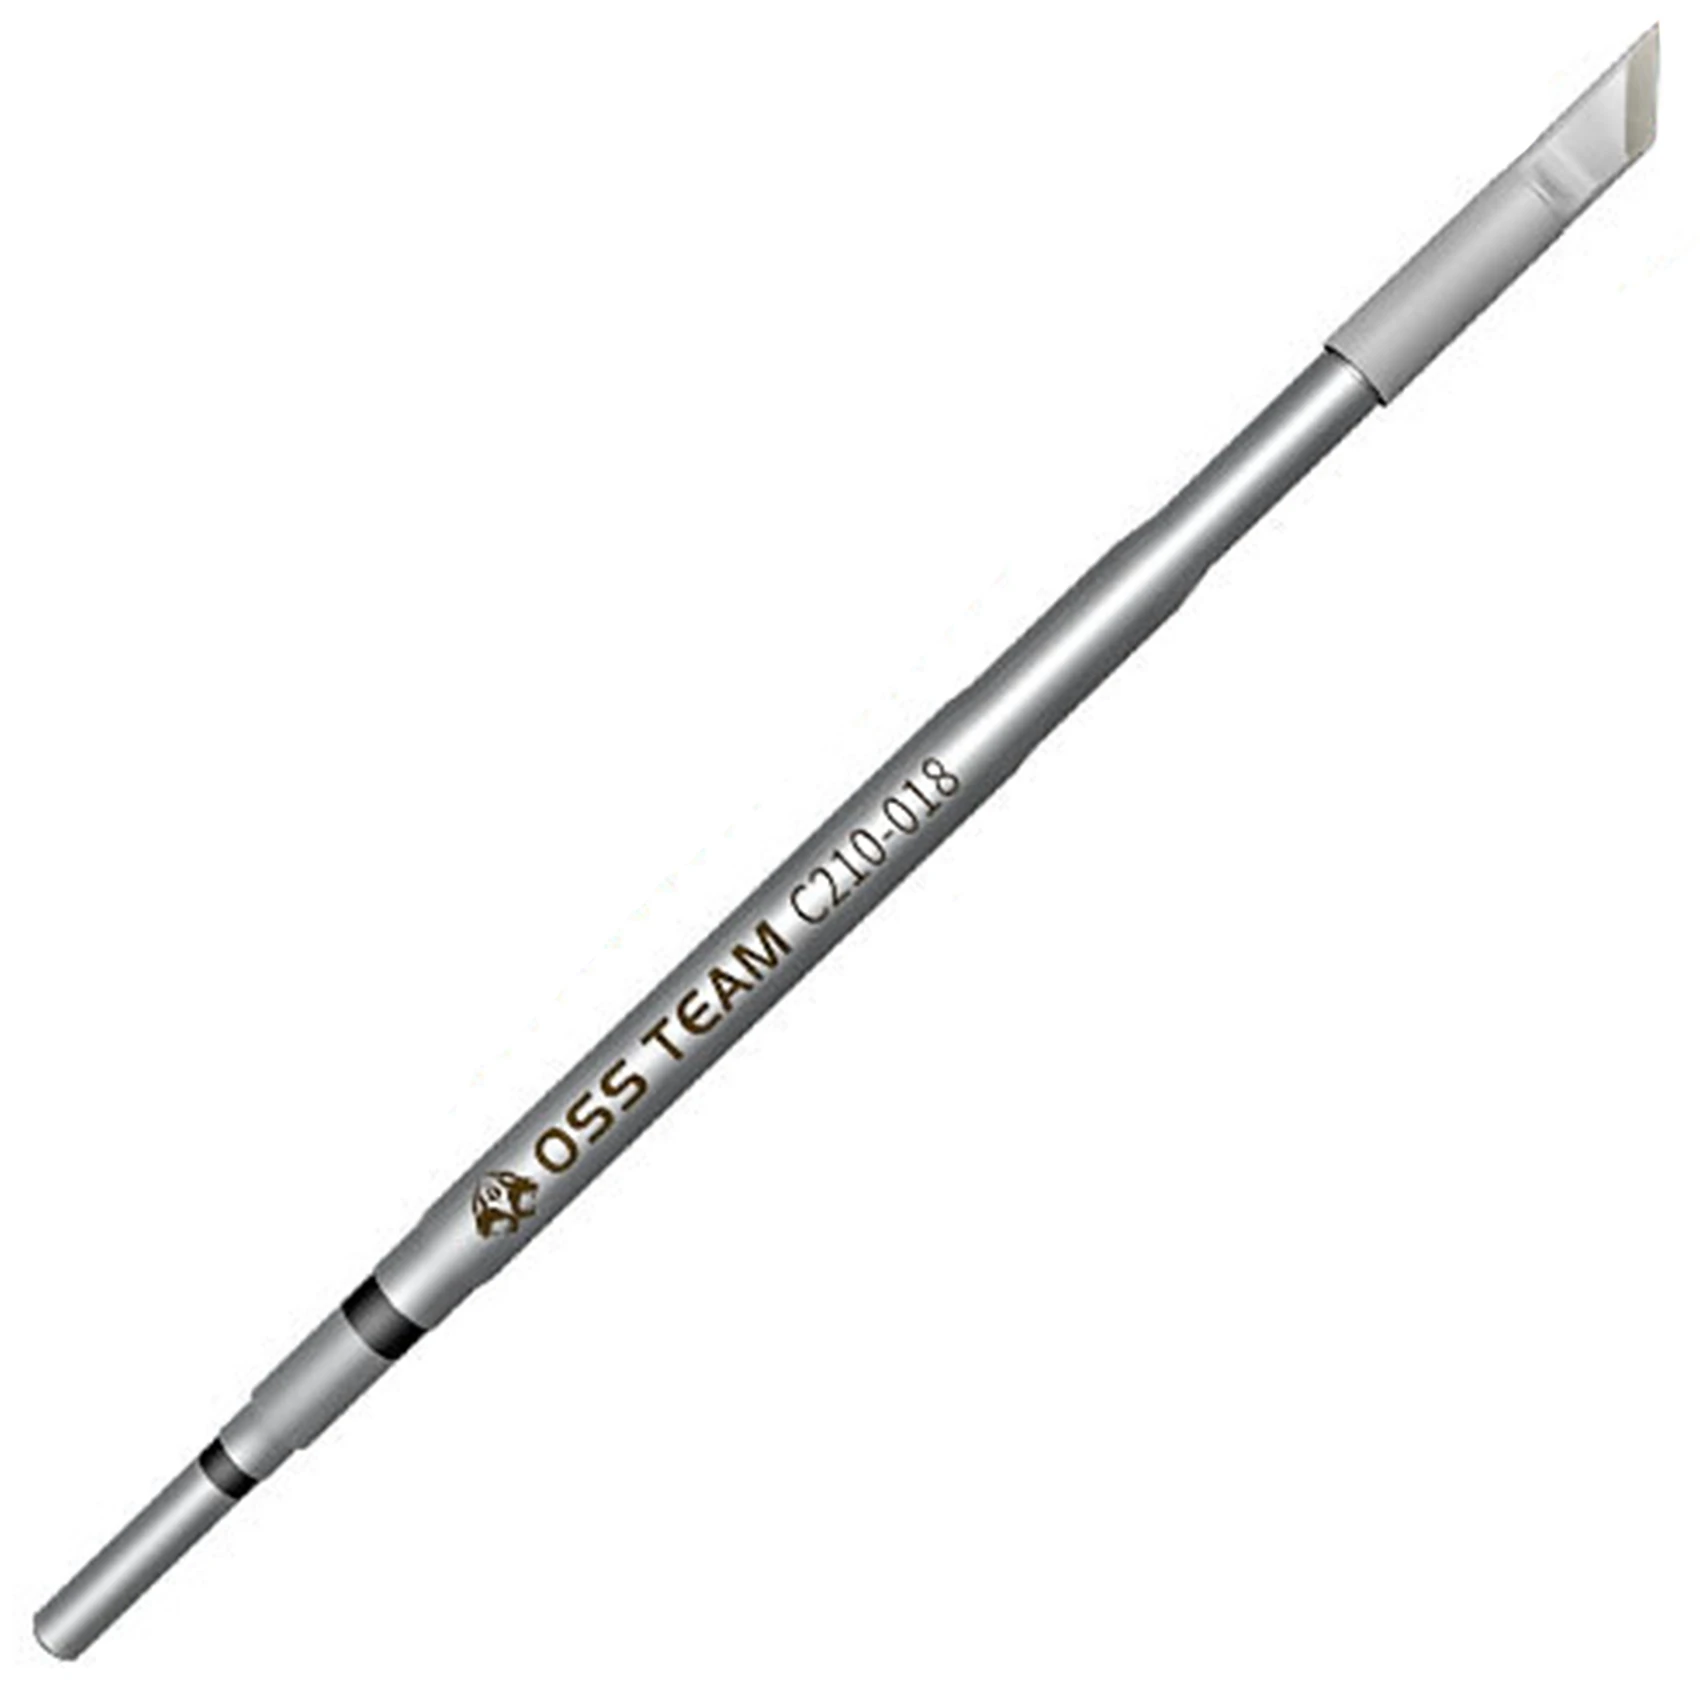 

Наконечник для паяльника серии C210, бессвинцовая сварочная головка для JBC T210, ручка для паяльной станции Sugon T26 T26D (018)